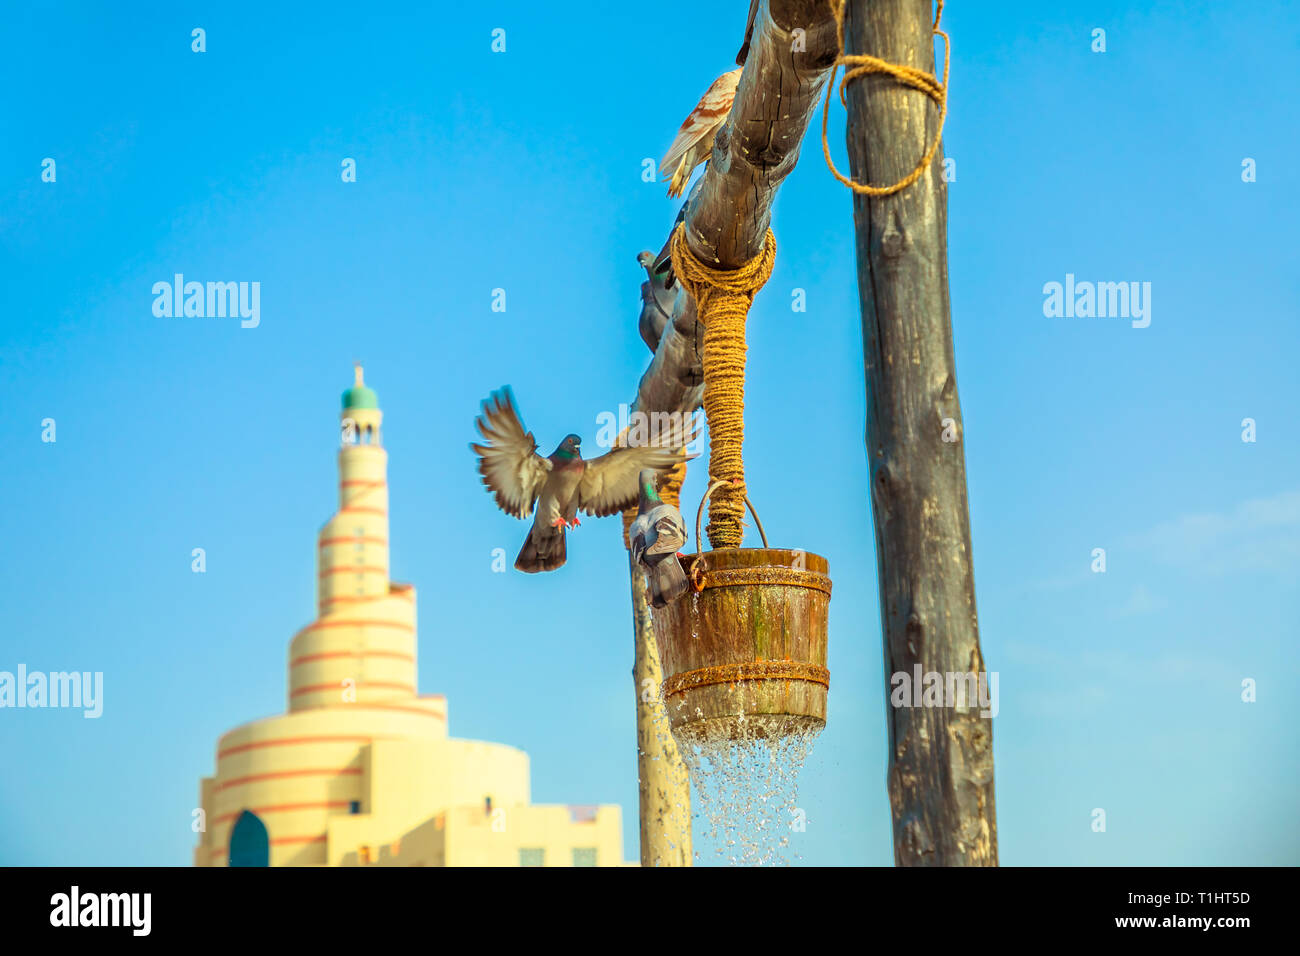 Taube am alten Brunnen Brunnen fliegen, berühmten touristischen Ort in der Mitte der Souq Waqif vor der Moschee und Minarett in Doha, Katar. Naher Osten Stockfoto